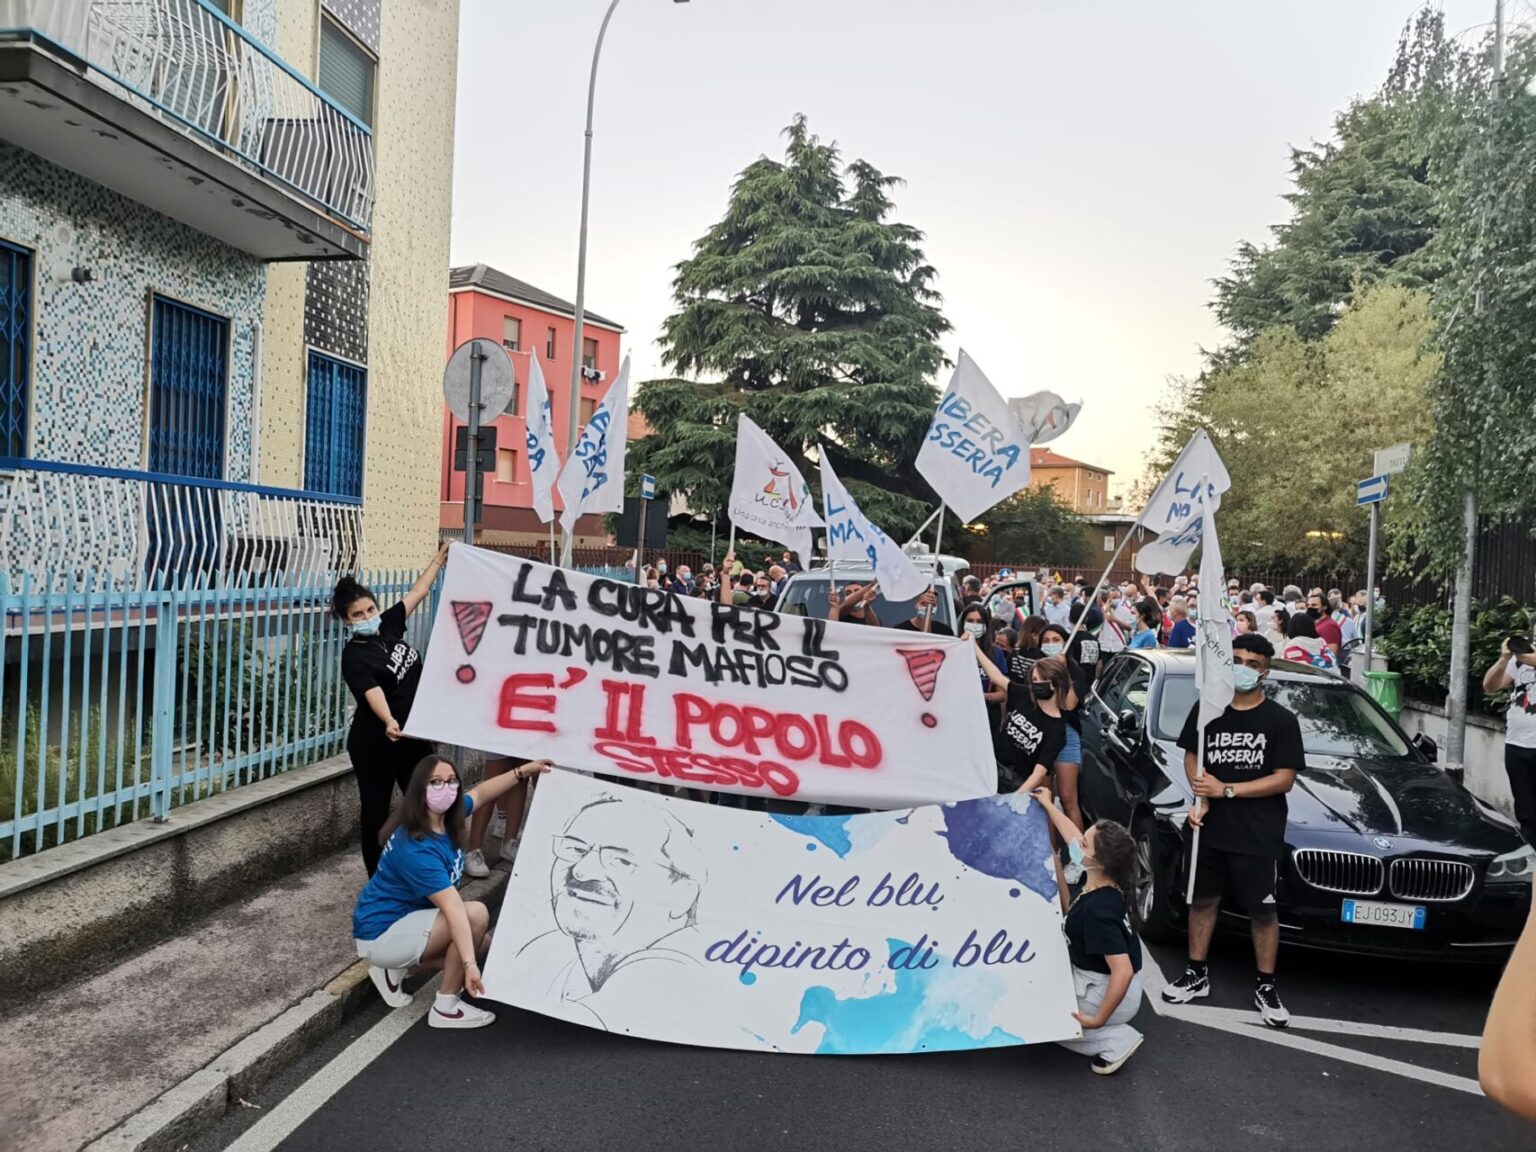 Buccinasco manifesta contro 'ndrangheta